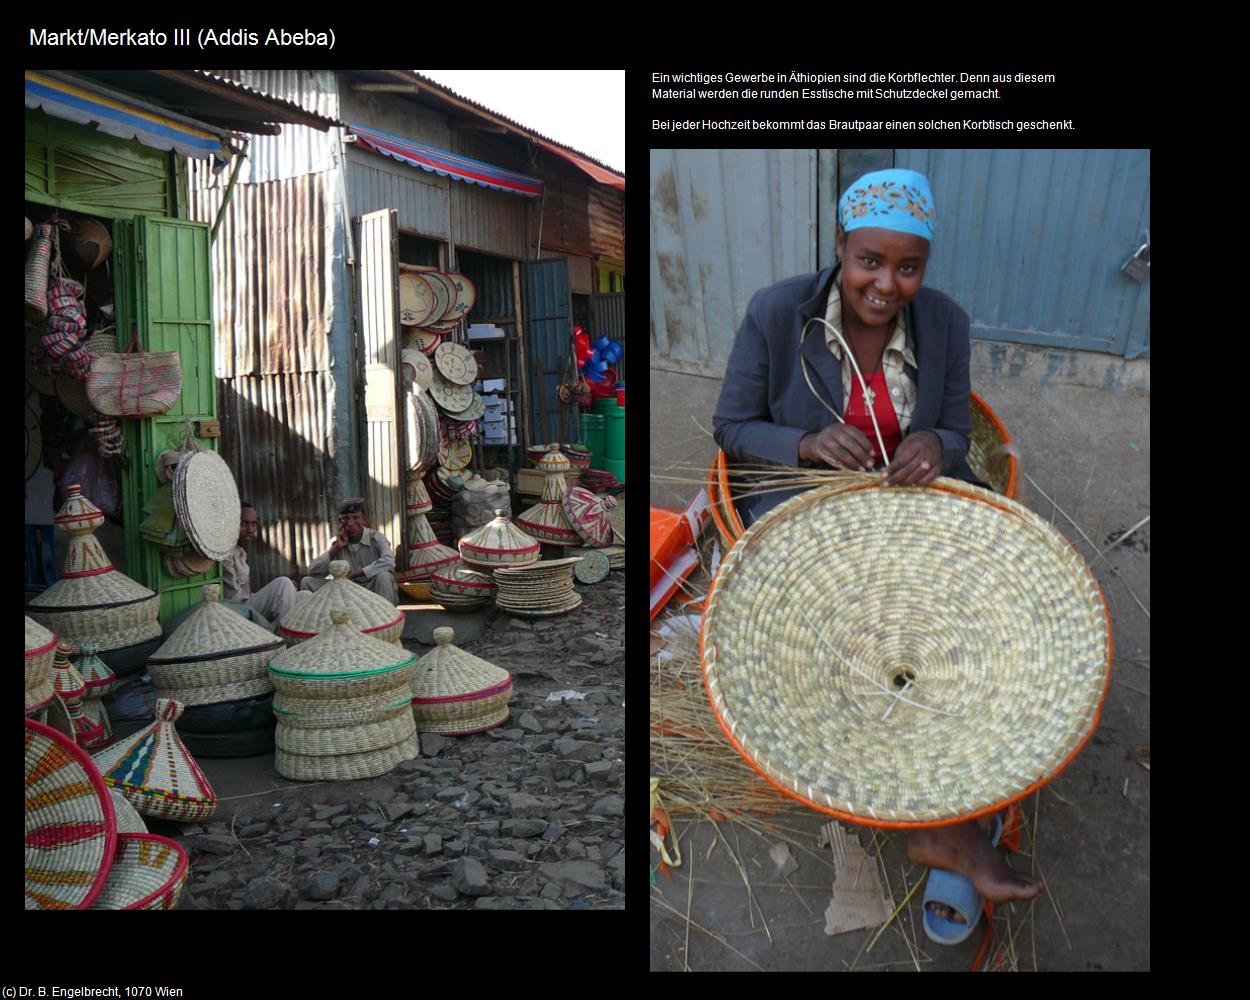 Markt/Merkato III (Addis Abeba) in Äthiopien